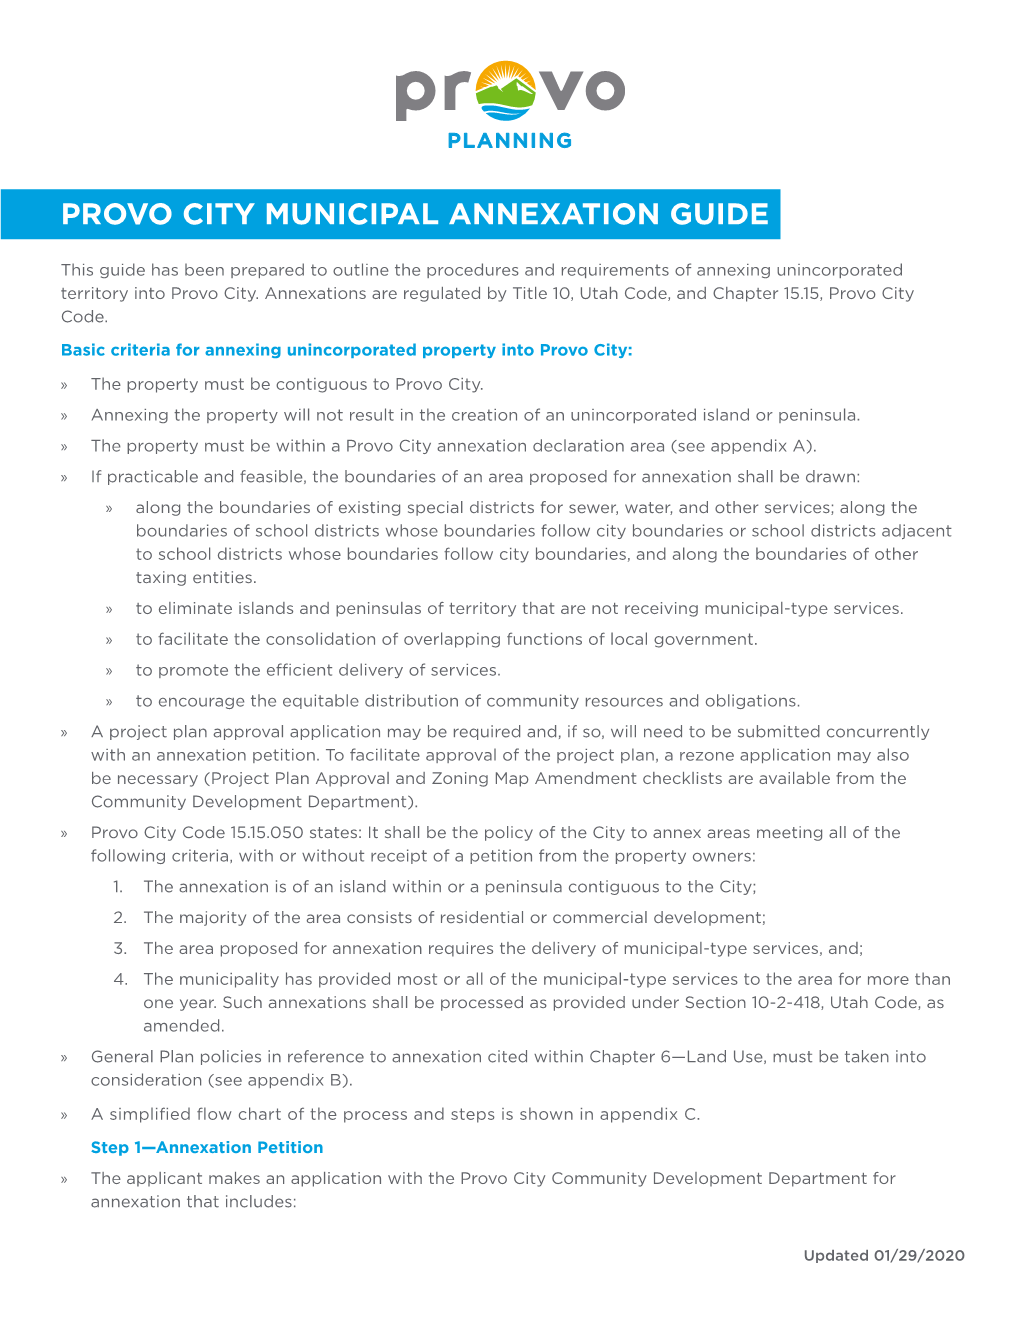 Provo City Municipal Annexation Guide